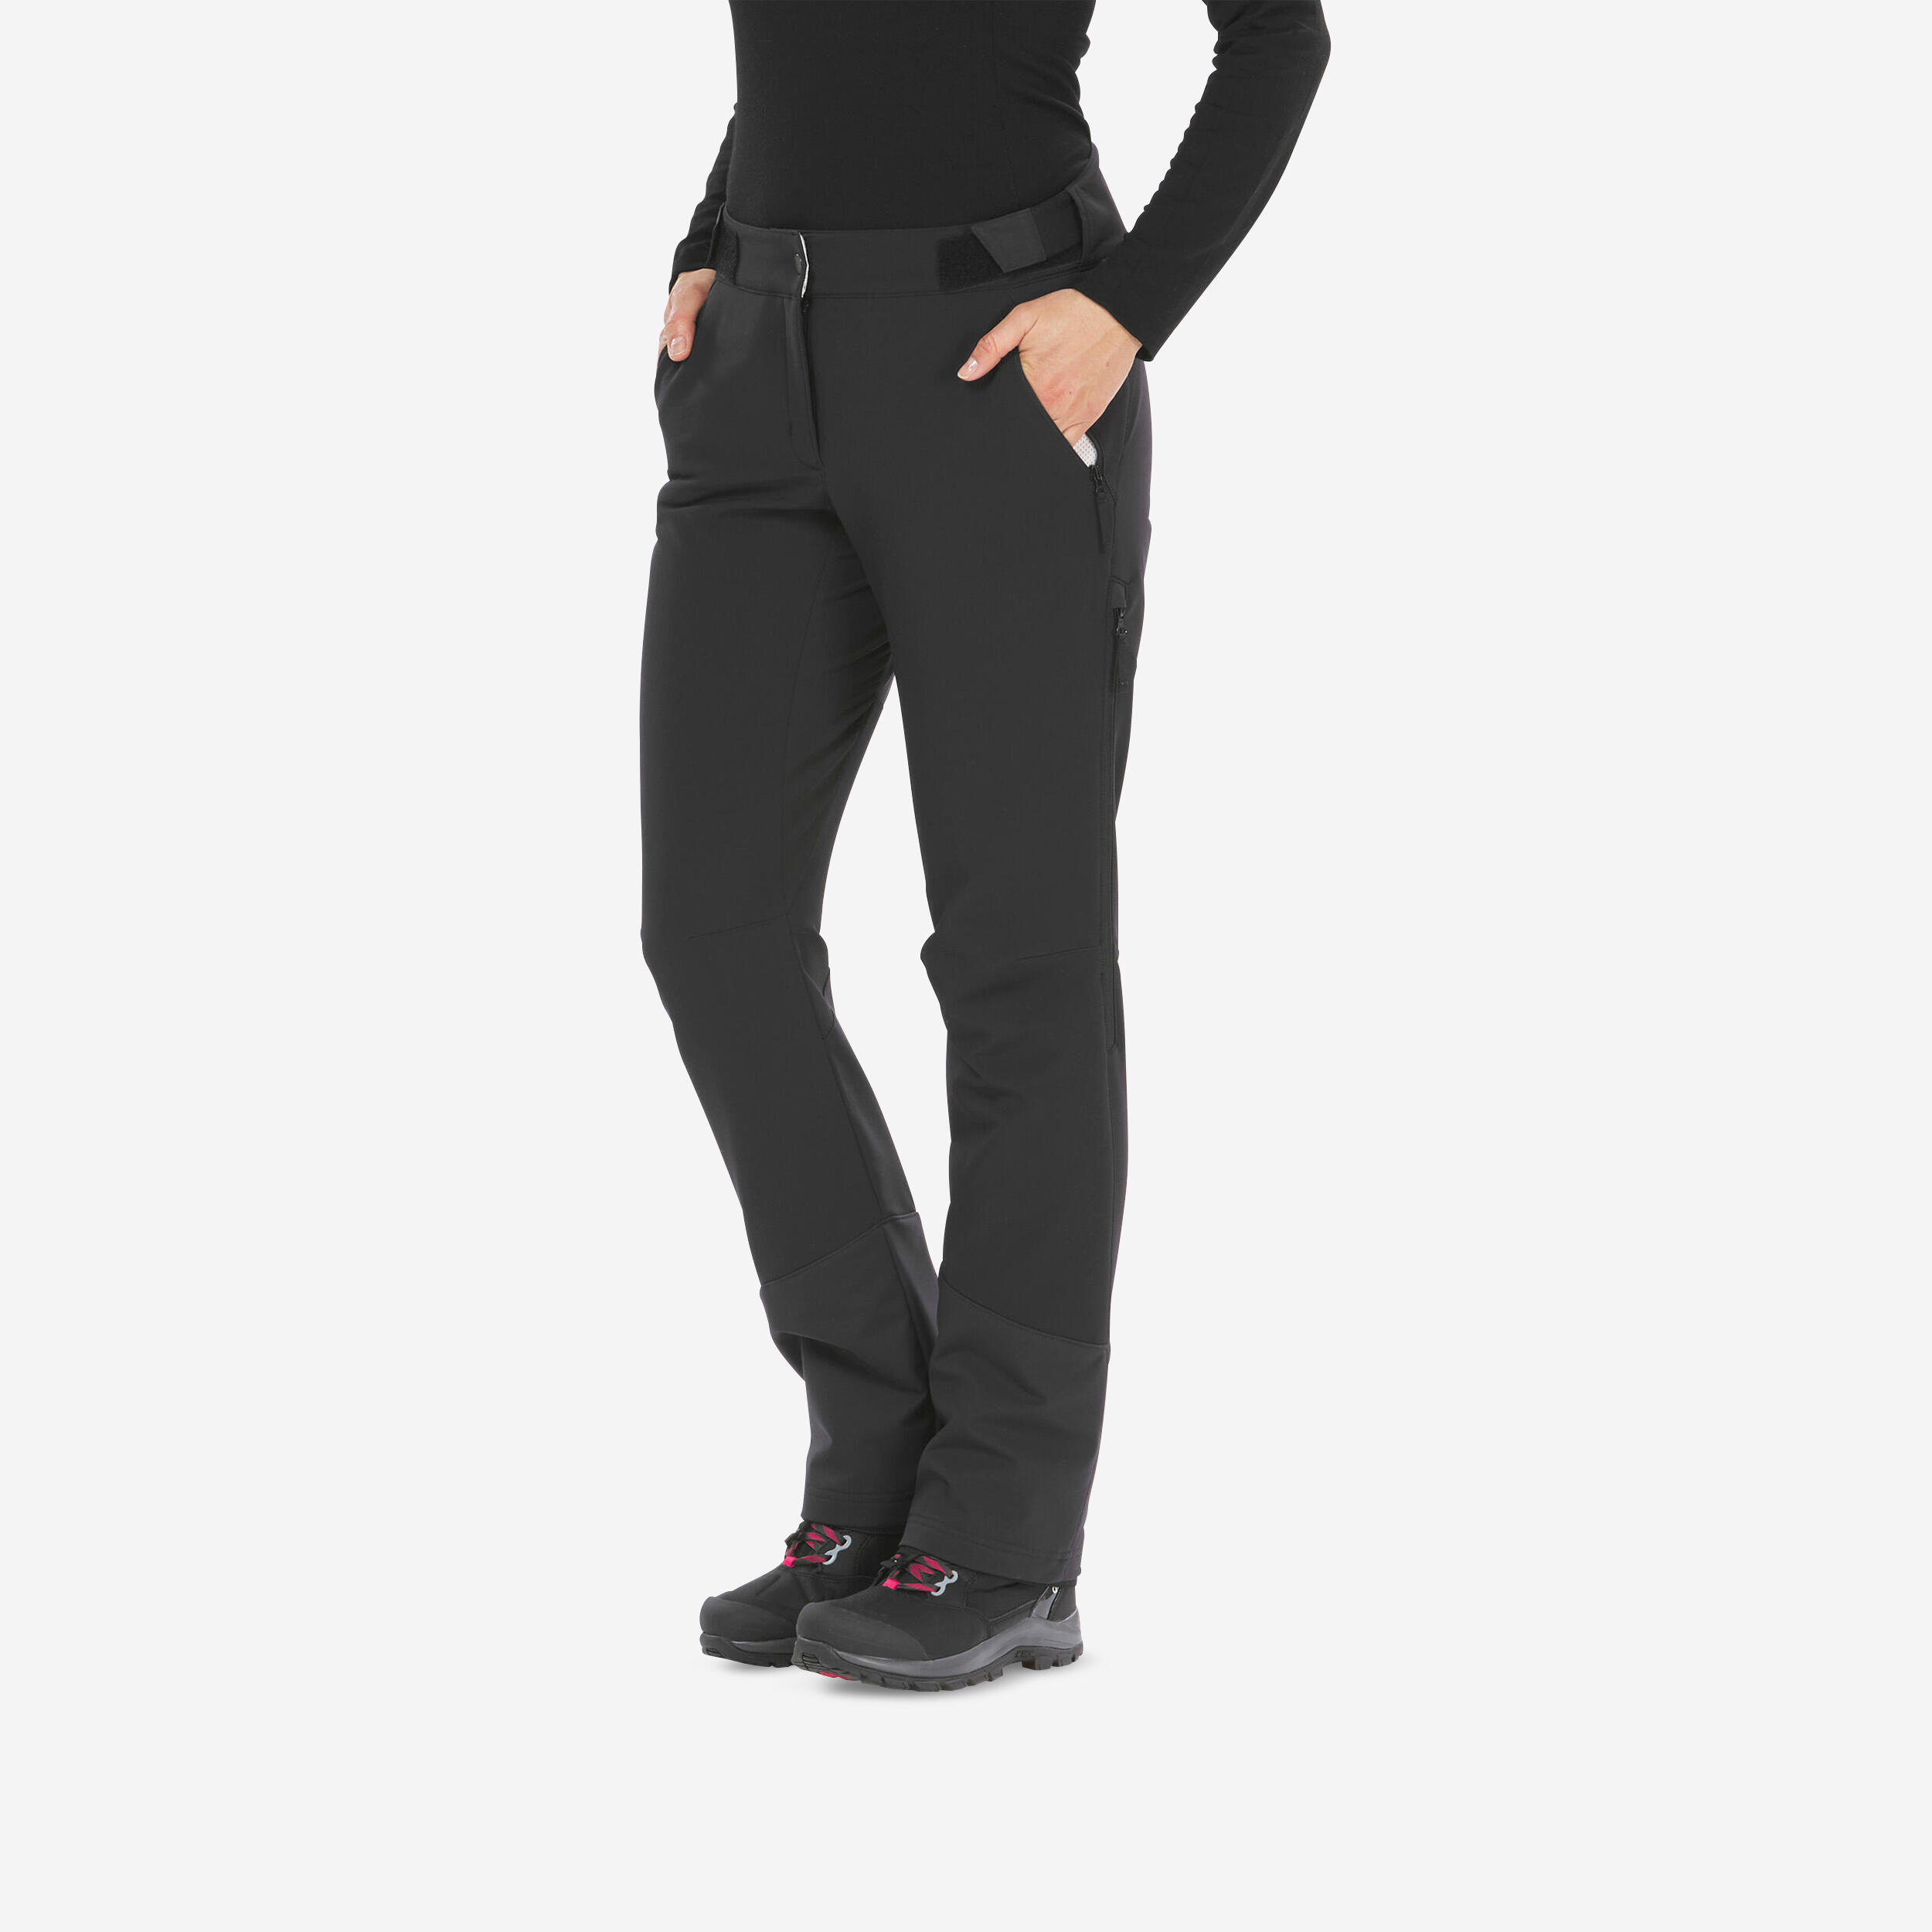 Women's Breathable Warm Pants - SH 500 Black - Black - Quechua